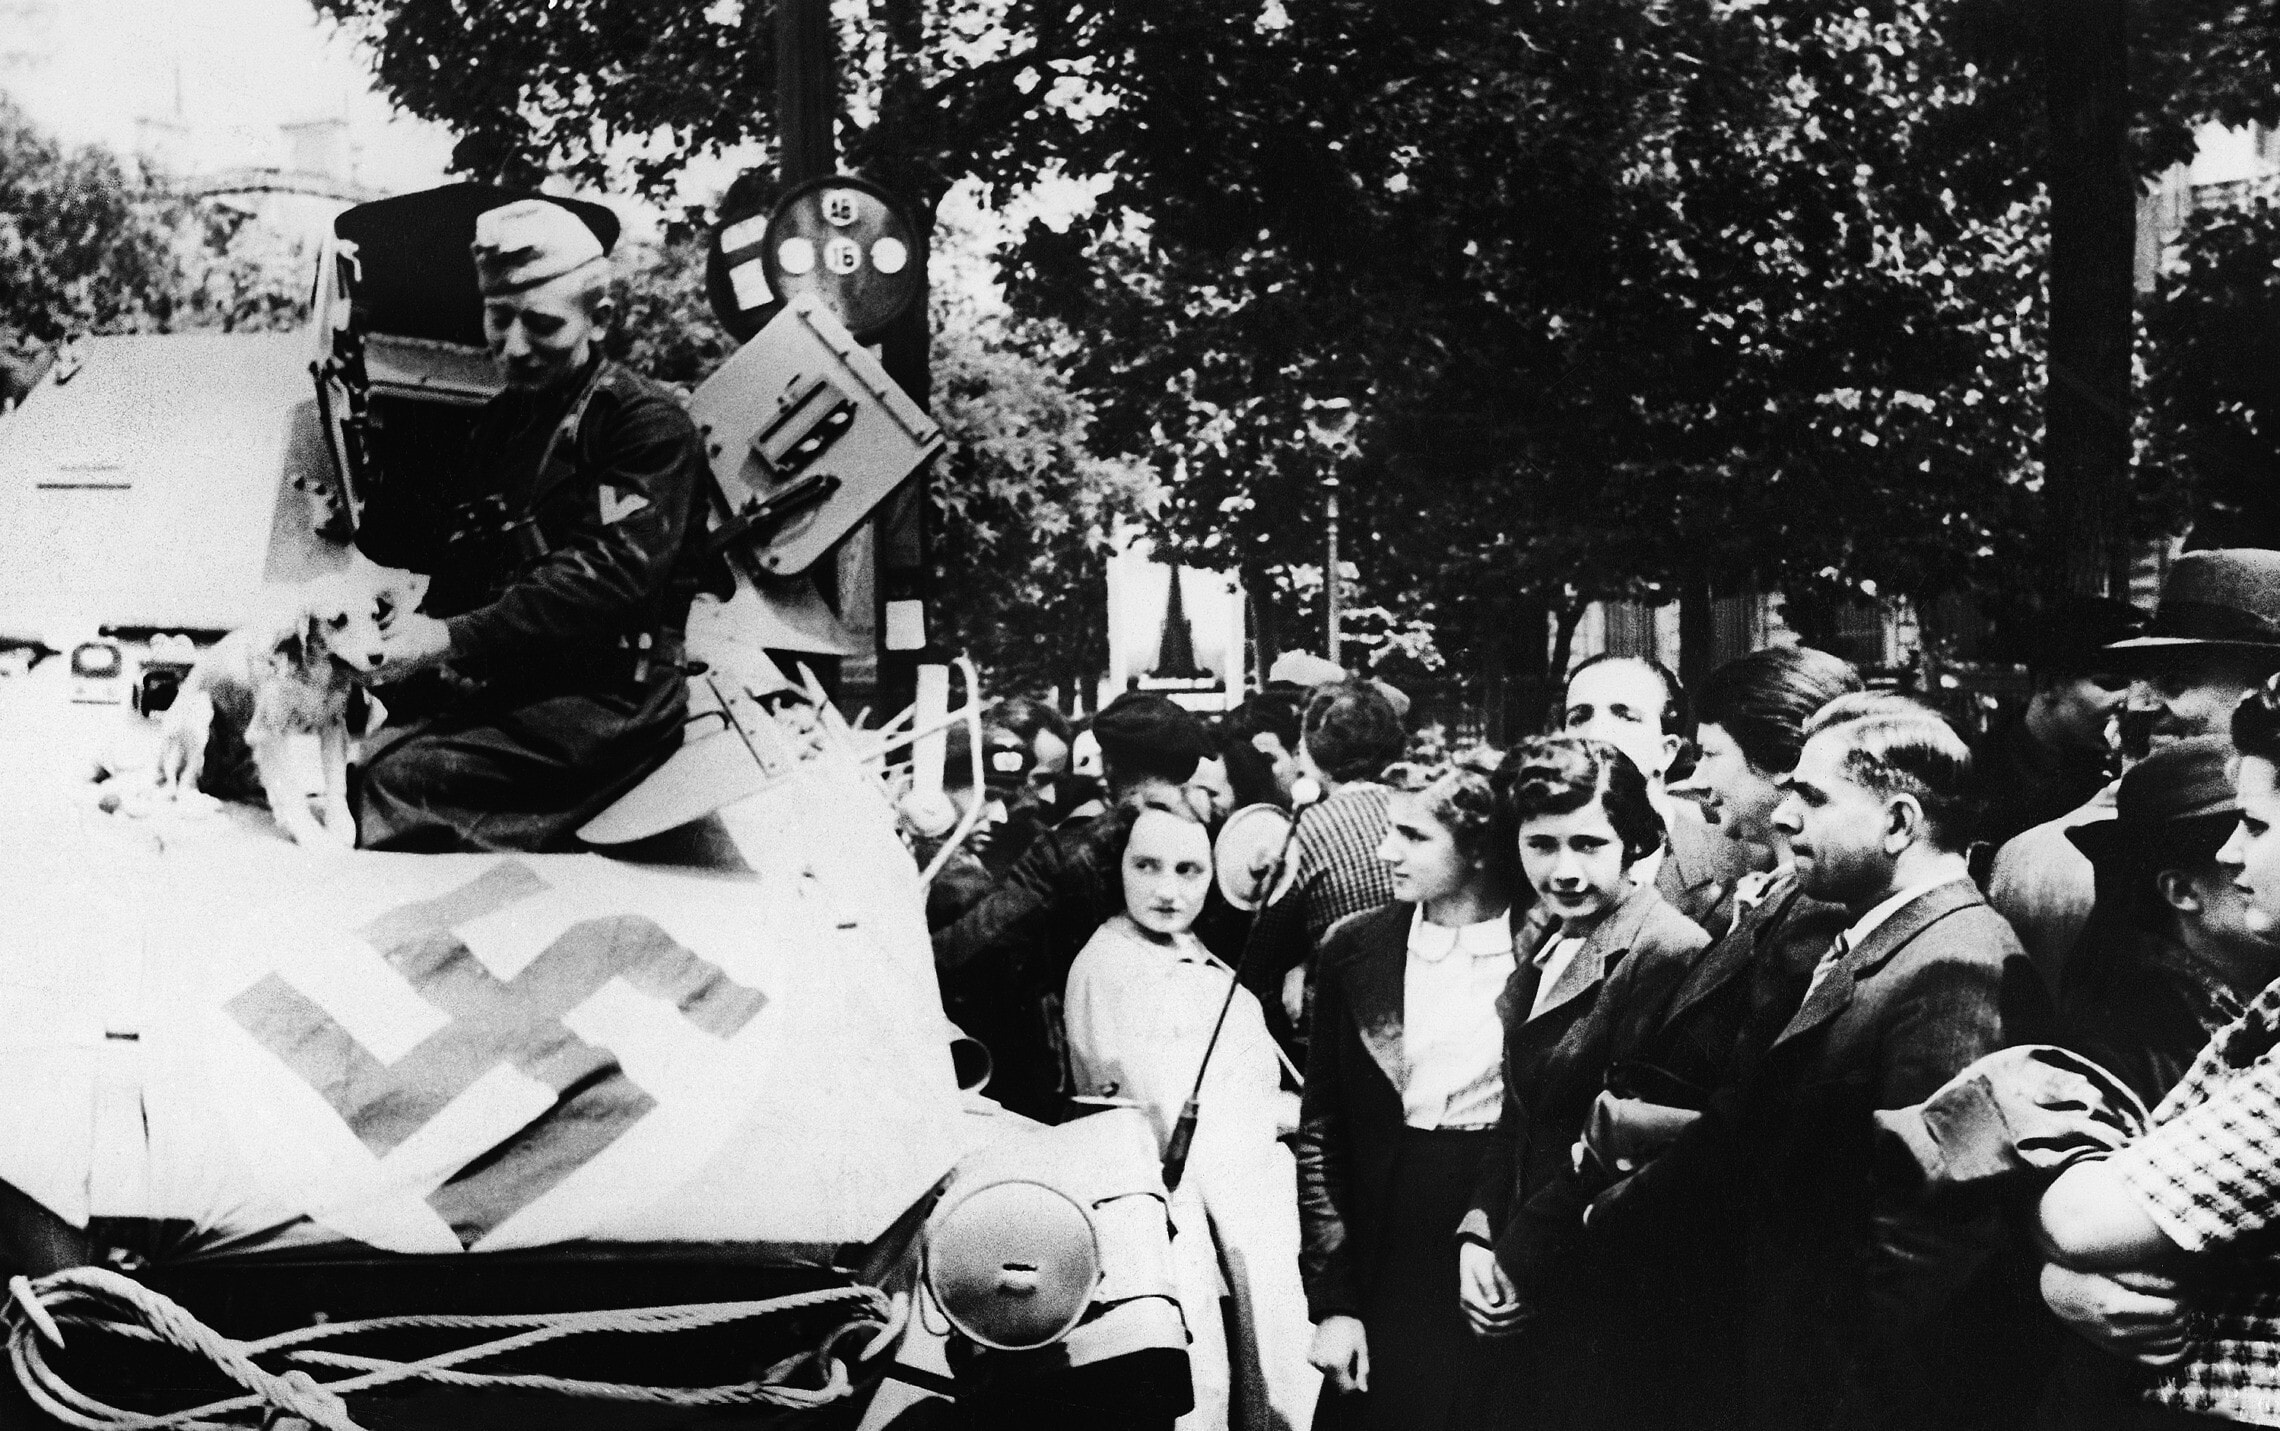 תושבי פריז חוו את כניסת הכוחות הגרמניים לעירם בשער הניצחון ב-20 ביוני 1940. פריז נכבשה ב-14 ביוני 1940 (צילום: AP Photo)